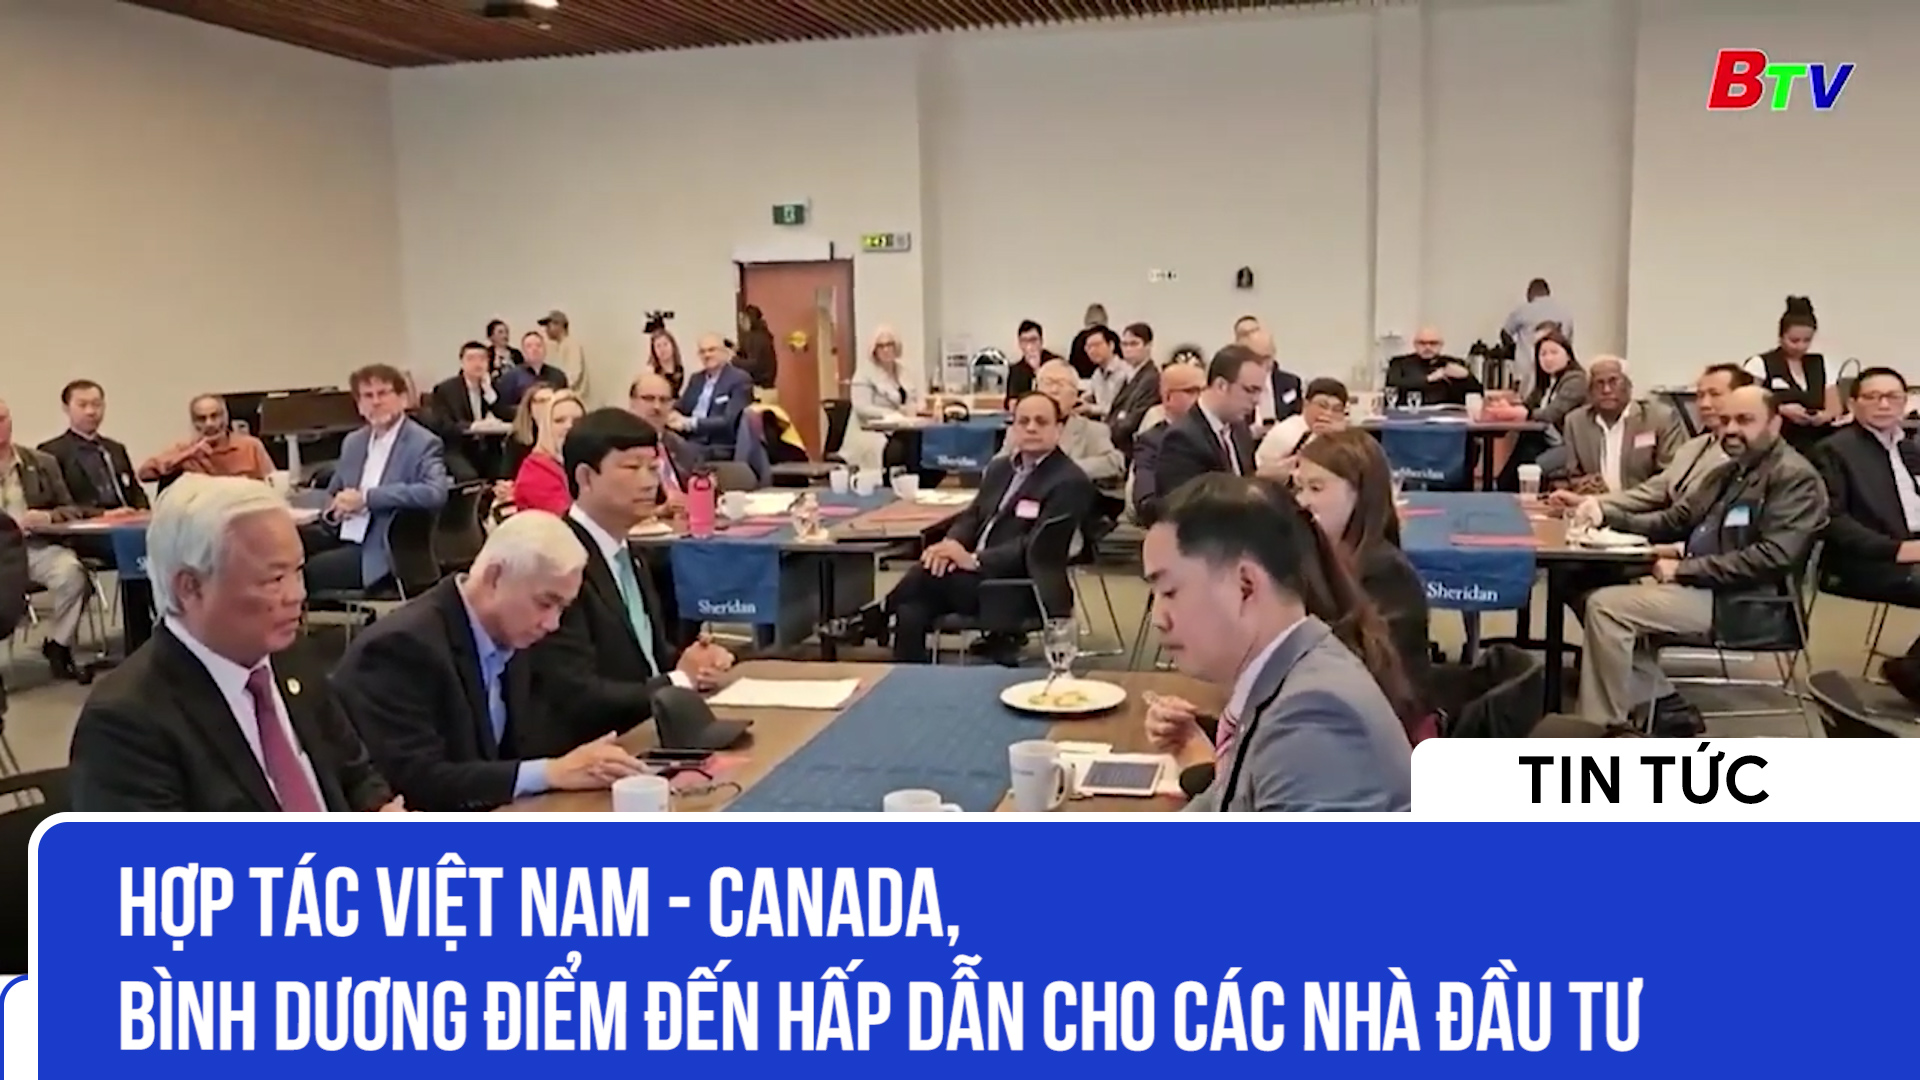 Hợp tác Việt Nam - Canada, Bình Dương điểm đến hấp dẫn cho các nhà đầu tư 